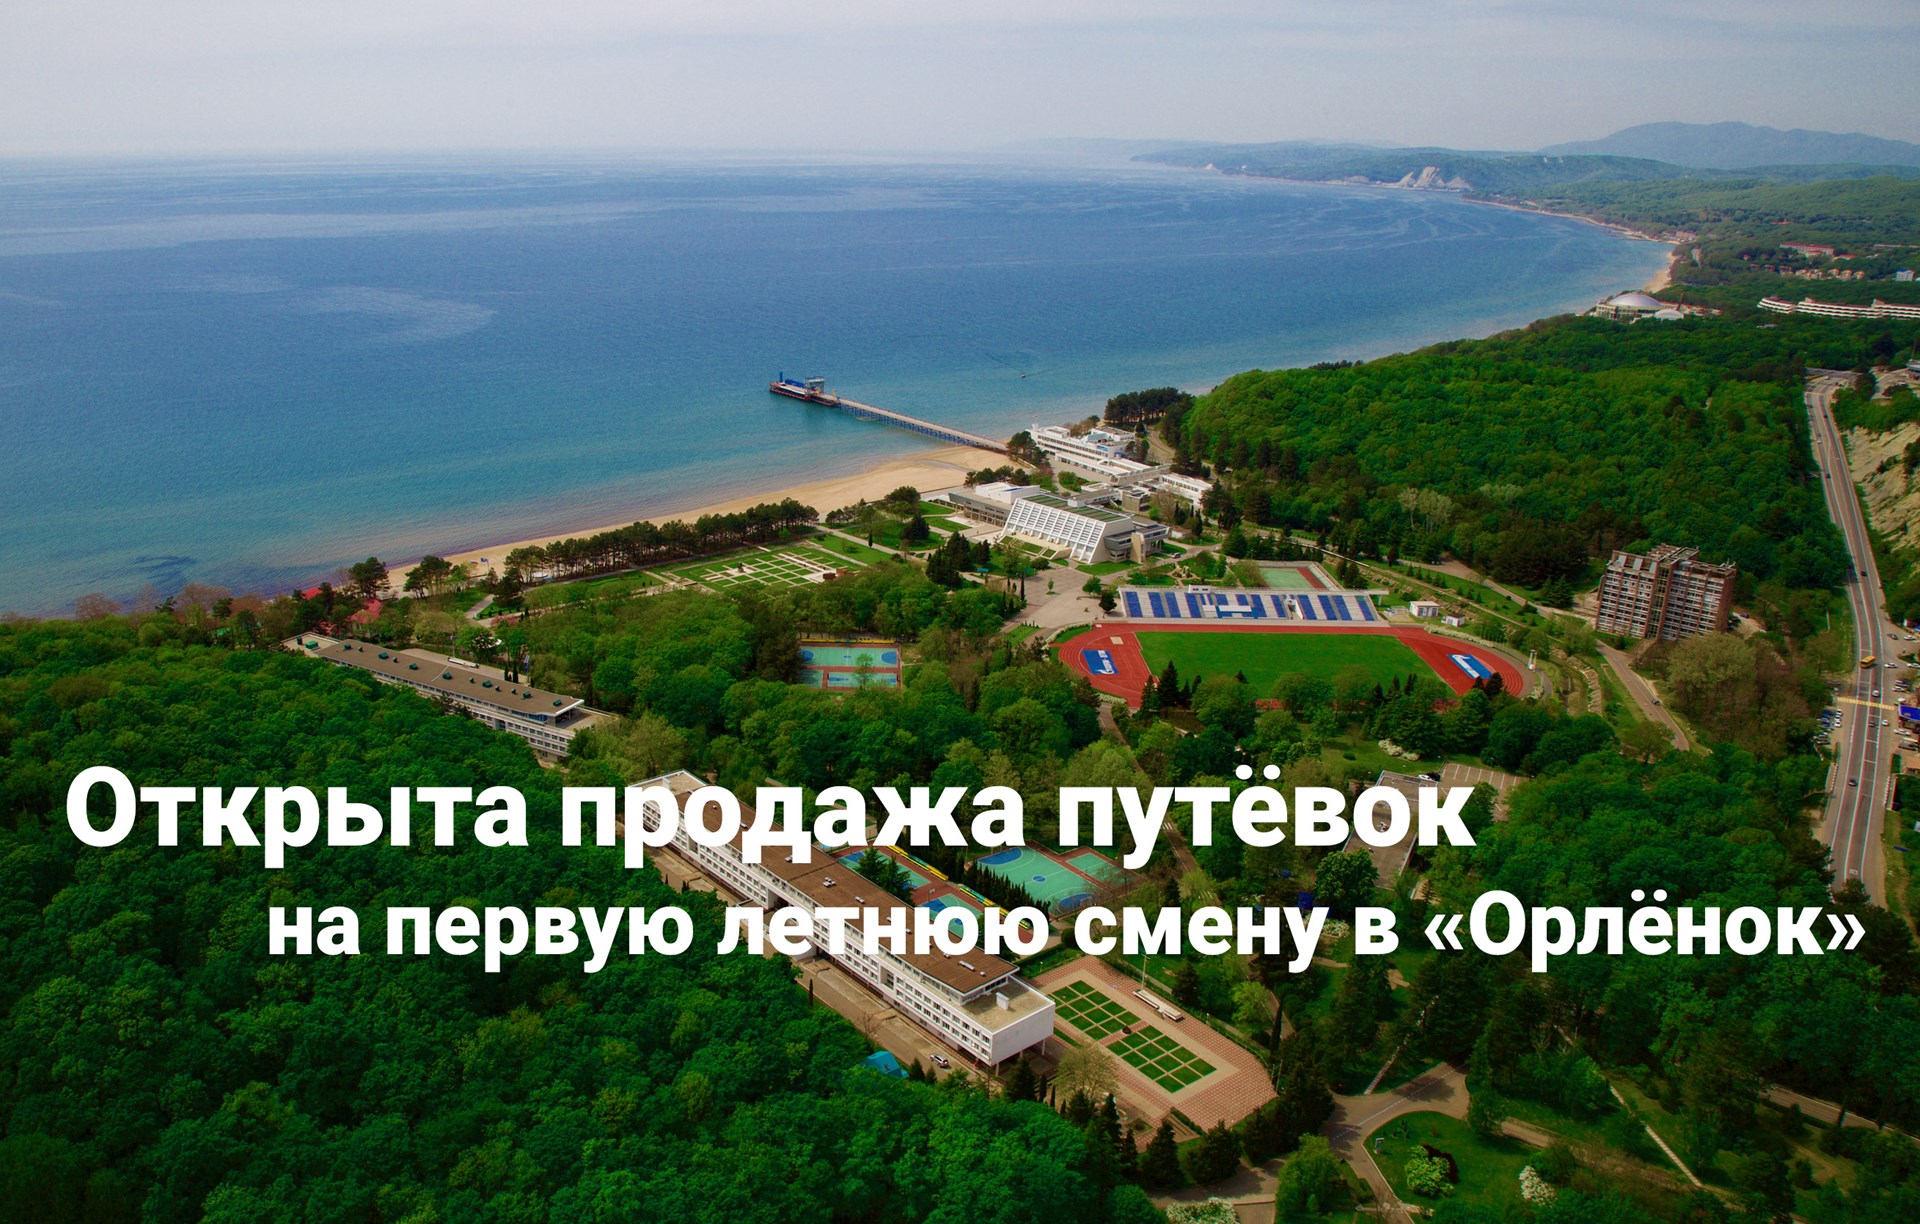 Орленок лагерь на черном море официальный сайт